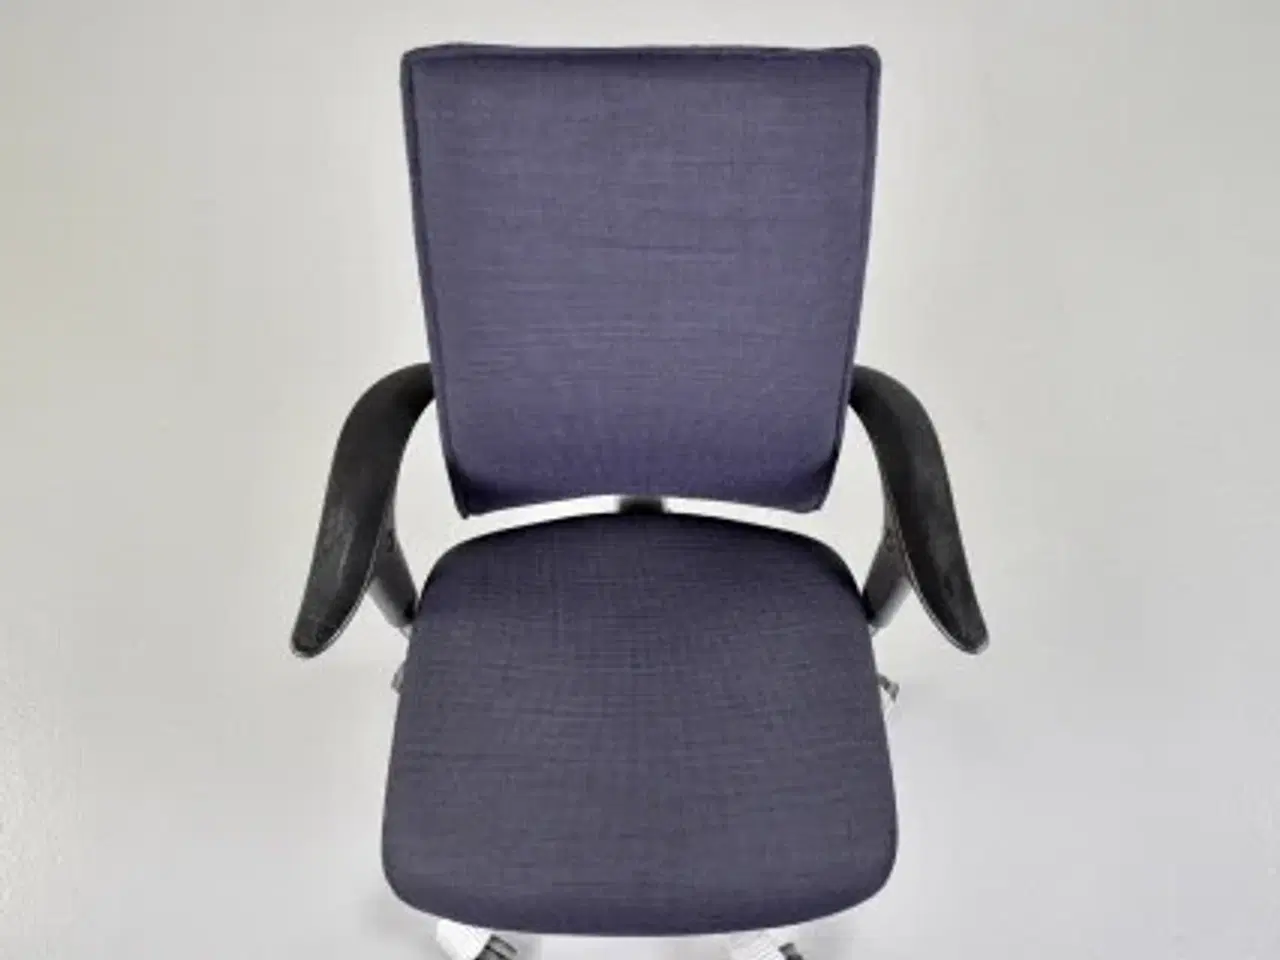 Billede 5 - Häg h05 5600 kontorstol med sort/blå polster, høj ryg, armlæn og grå stel.